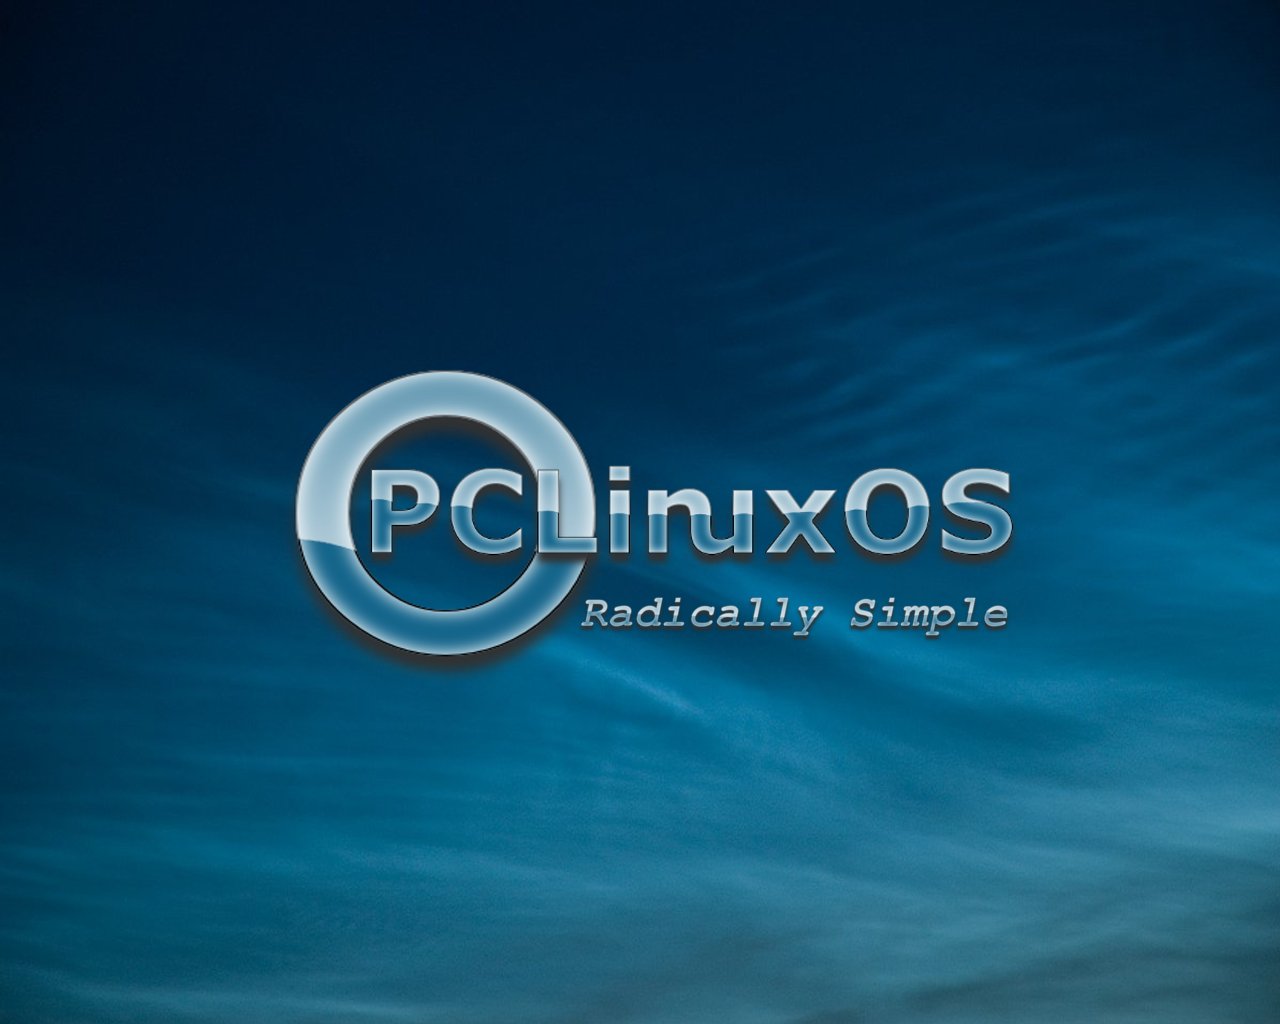 pclinuxos lxde 32 bit download